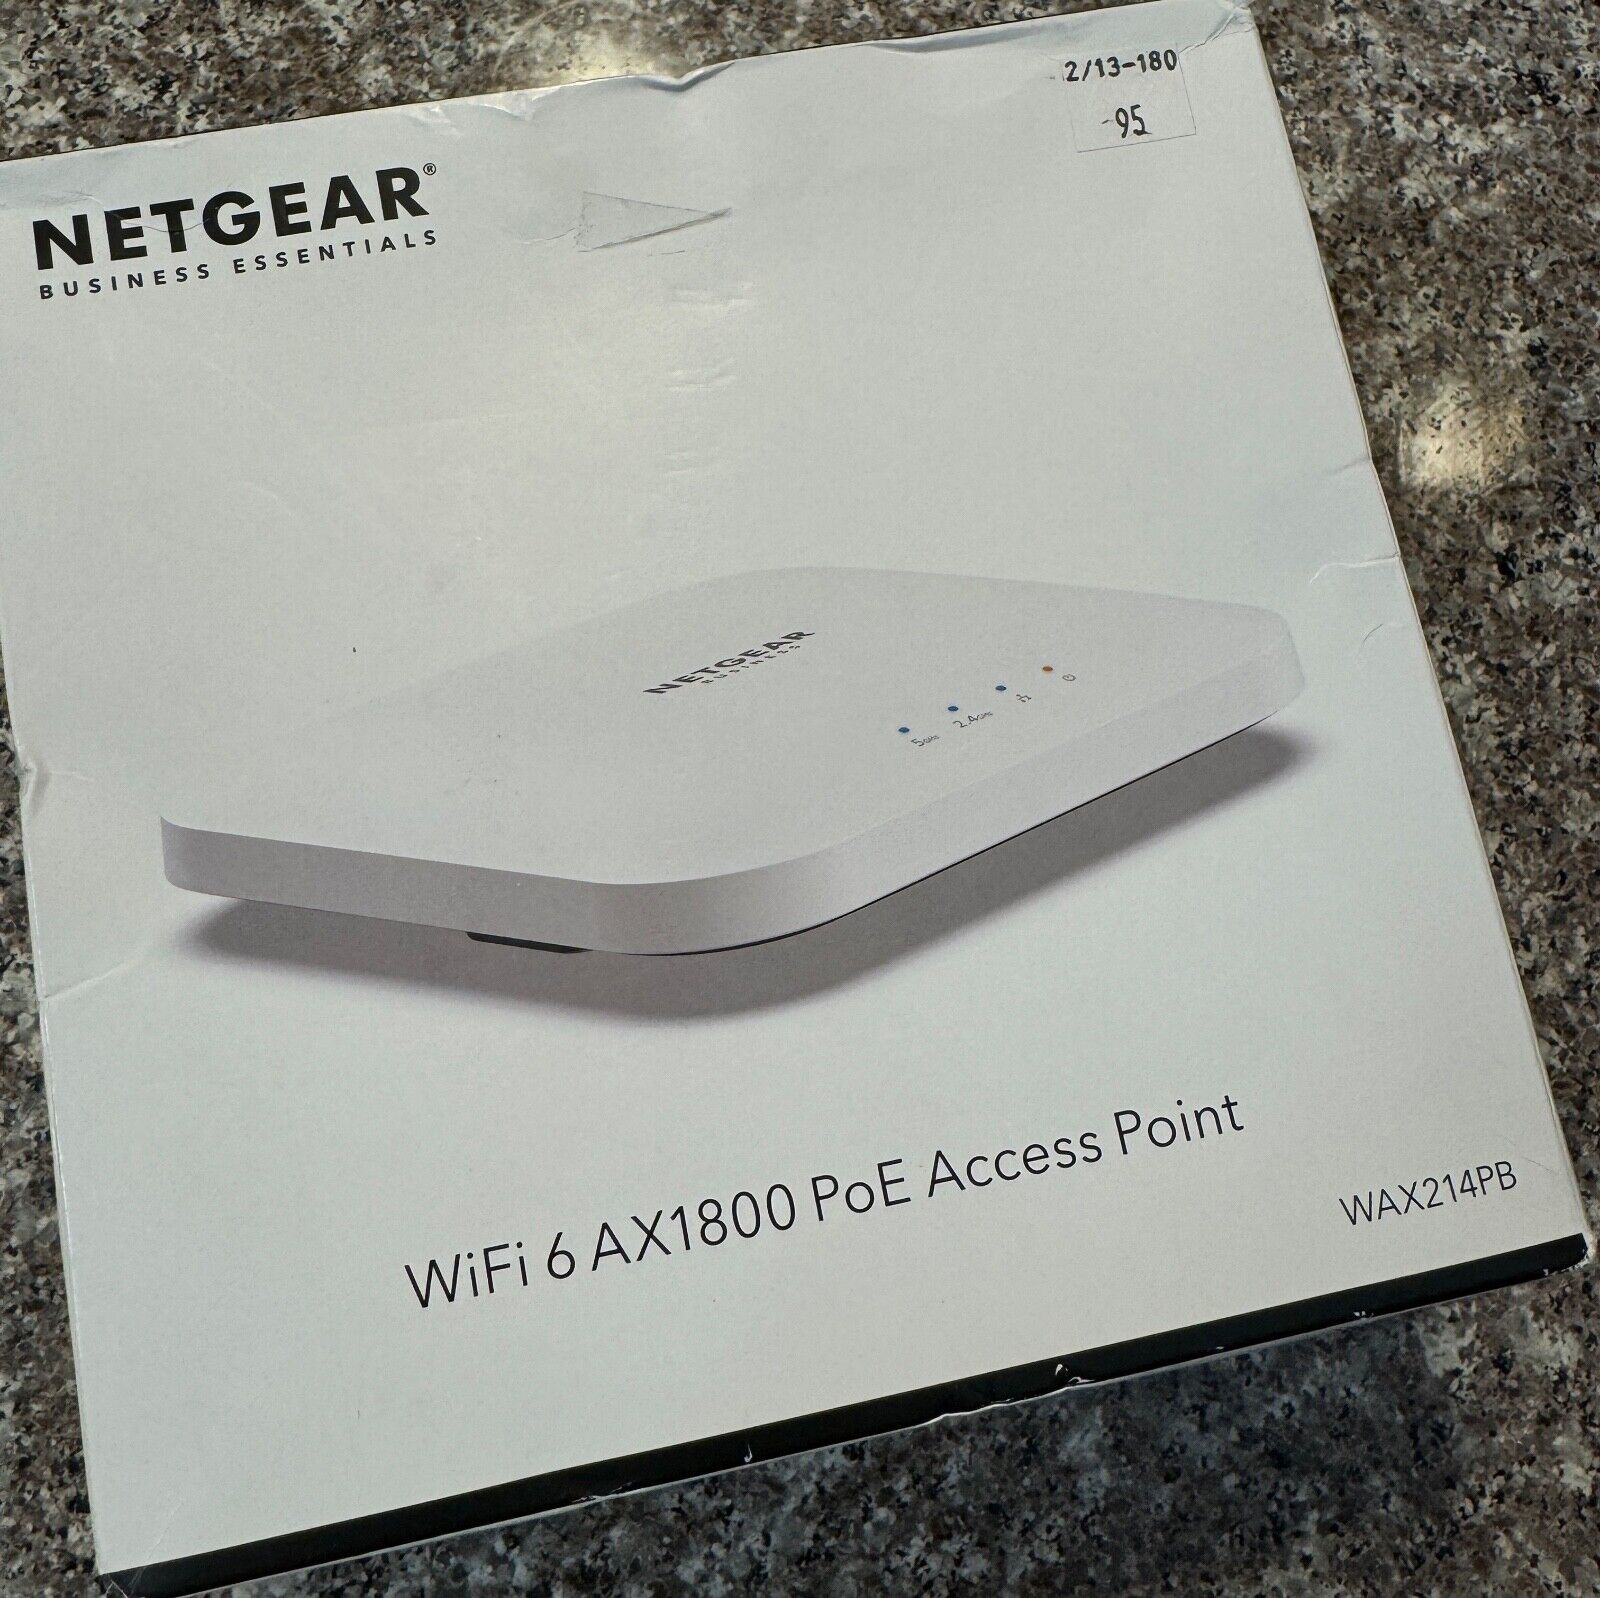 NETGEAR Business Essentials Wi-Fi 6 AX1800 PoE Access Point WAX214PB-100NAS NEW